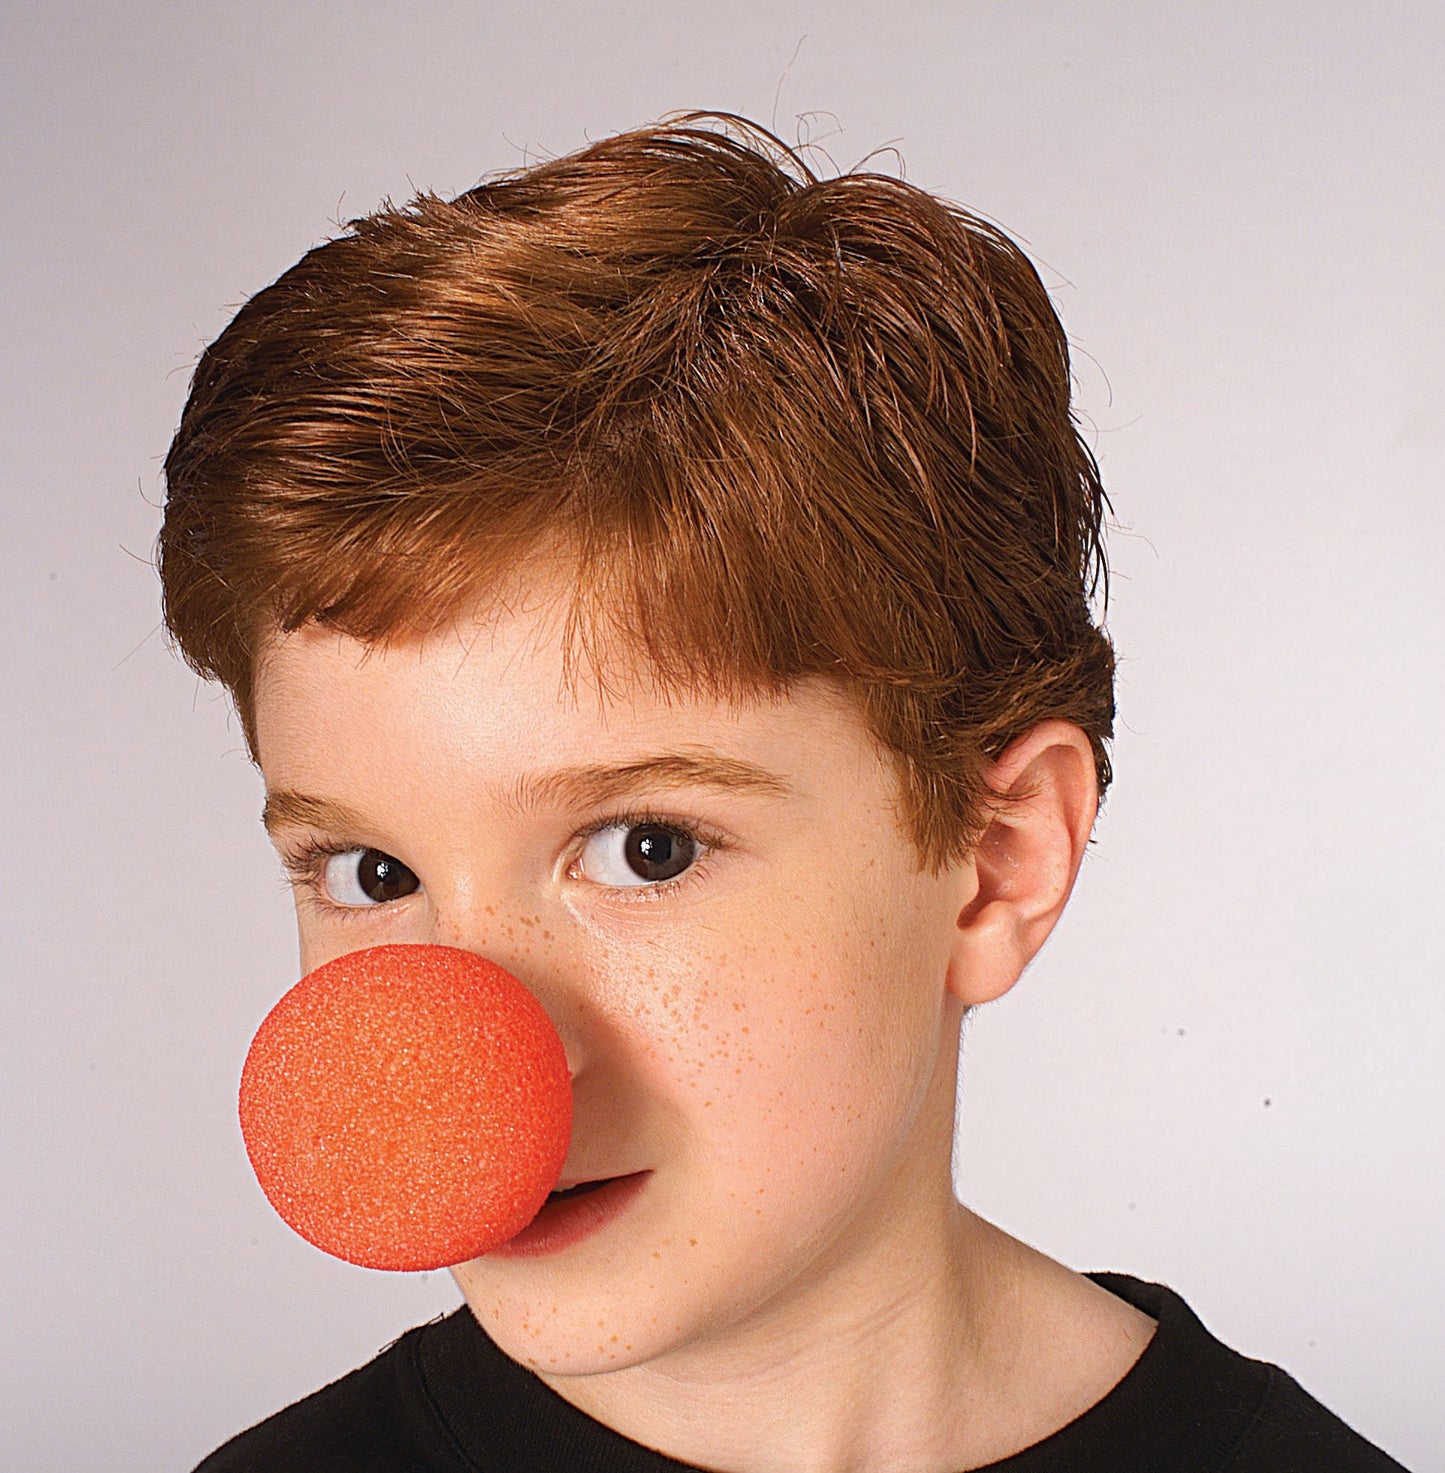 Foam Clown Nose: Red